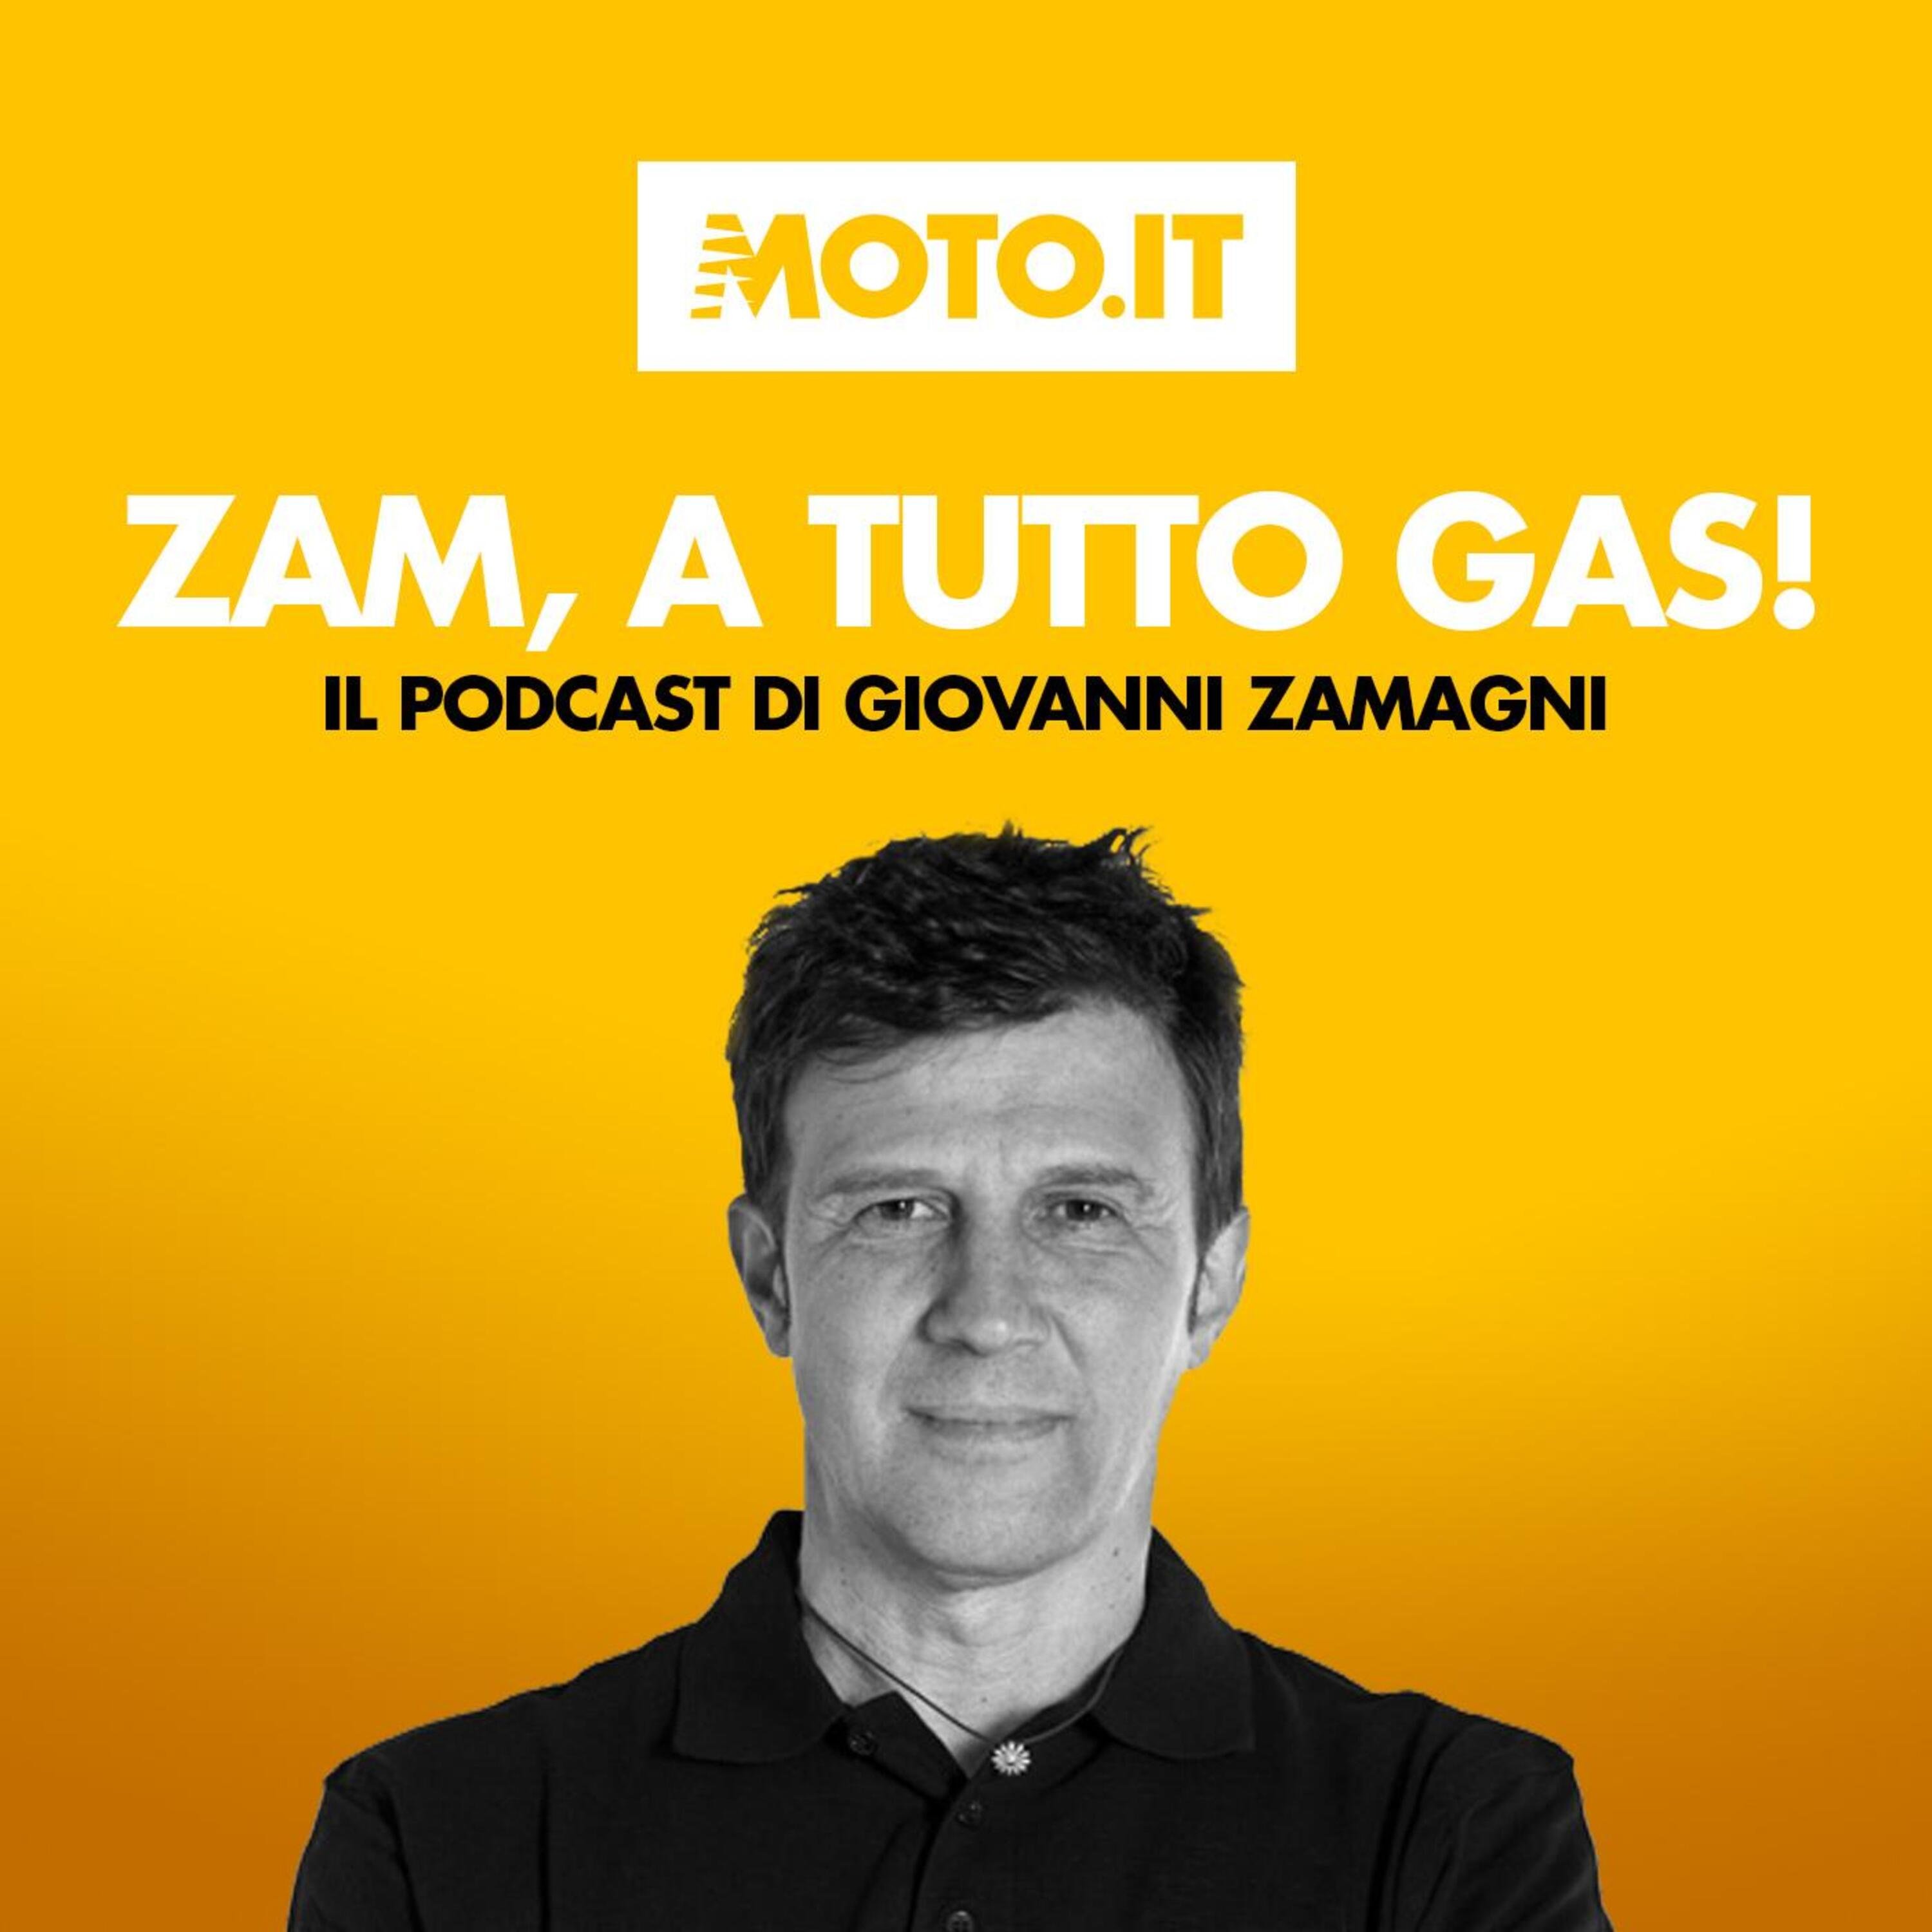 Zam a tutto gas: Moto3, bisogna intervenire! [PODCAST]